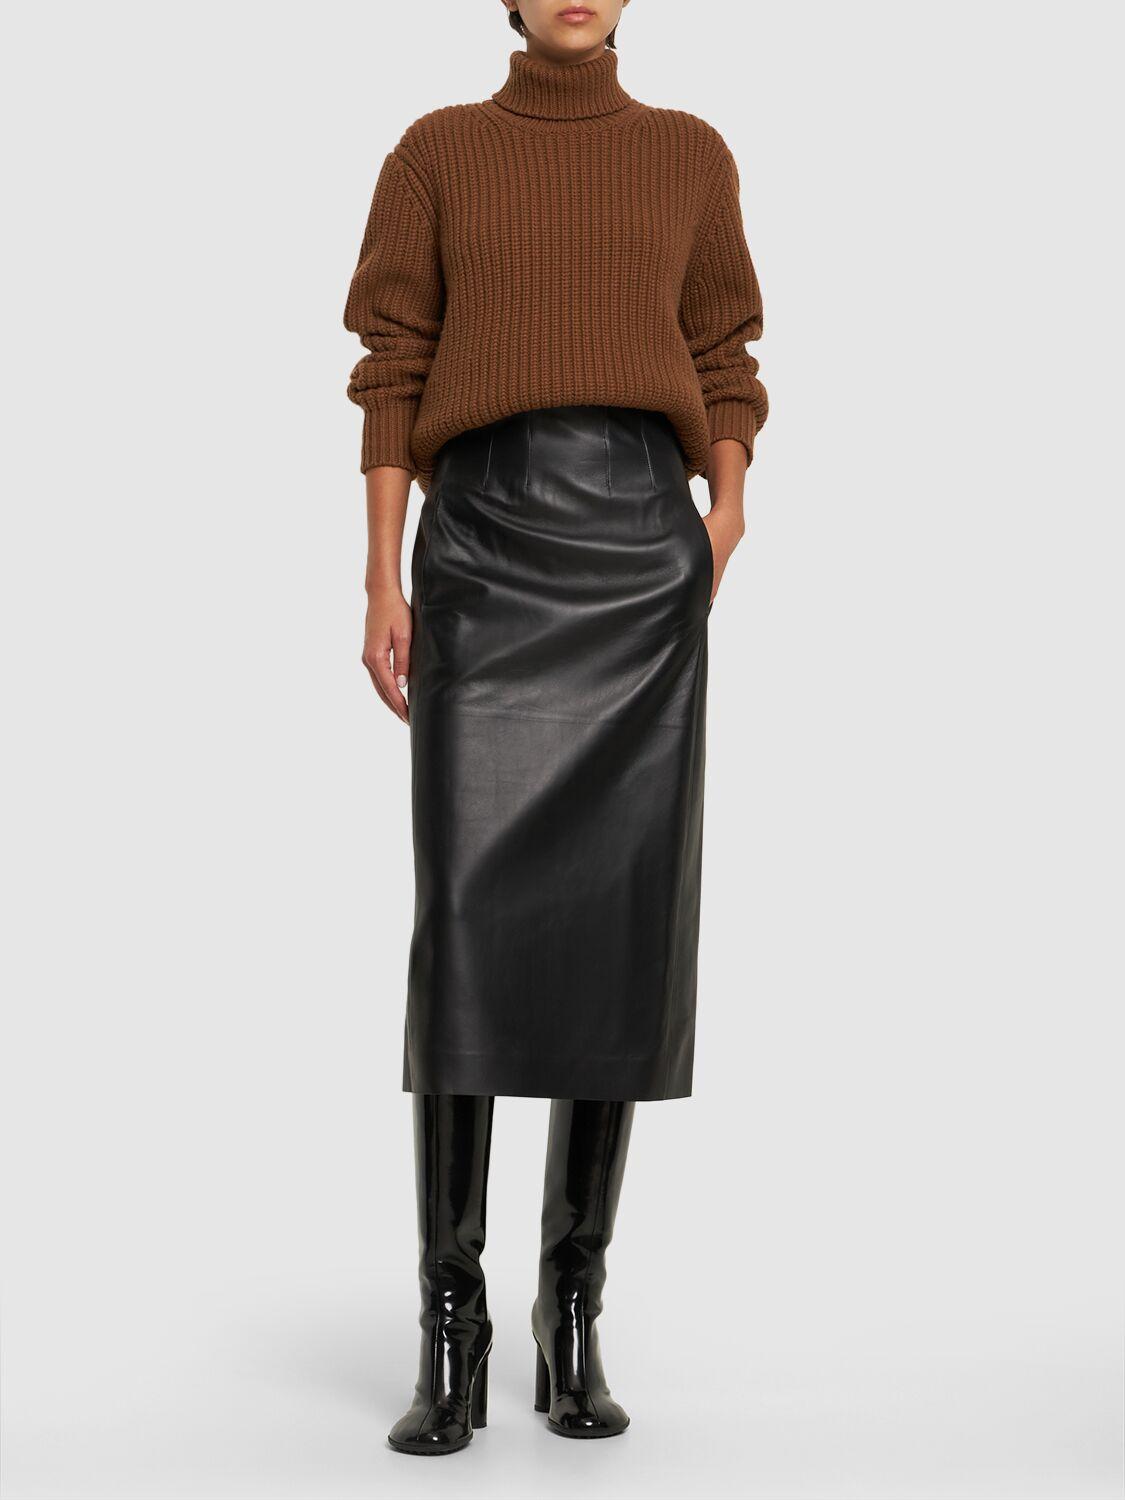 Chloé Napa Leather Corset Midi Skirt in Black